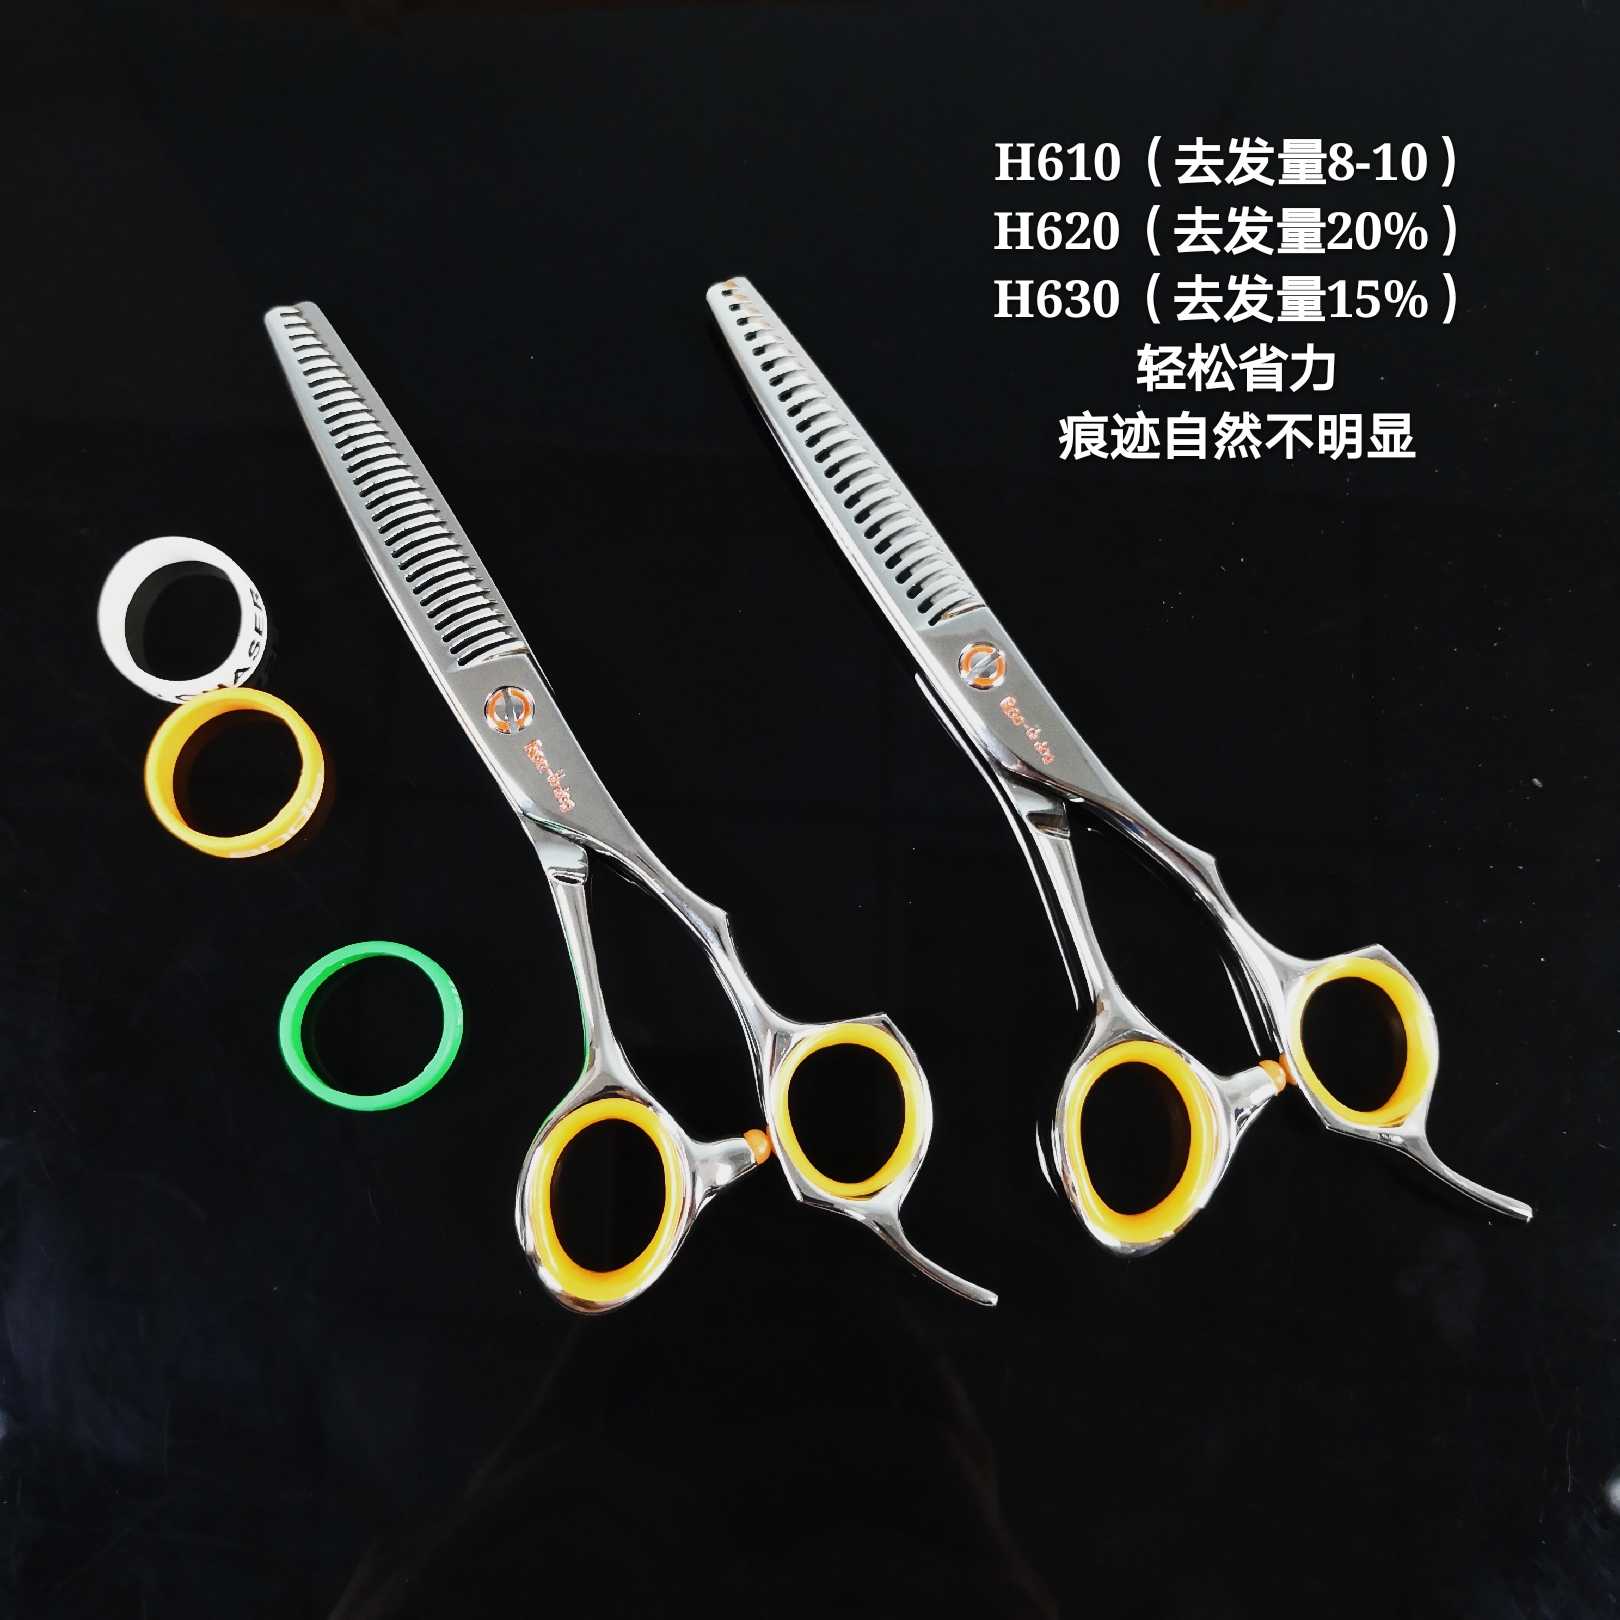 酷发型师装备台湾锋狗剪刀H-620/H630专业美发剪刀理发剪